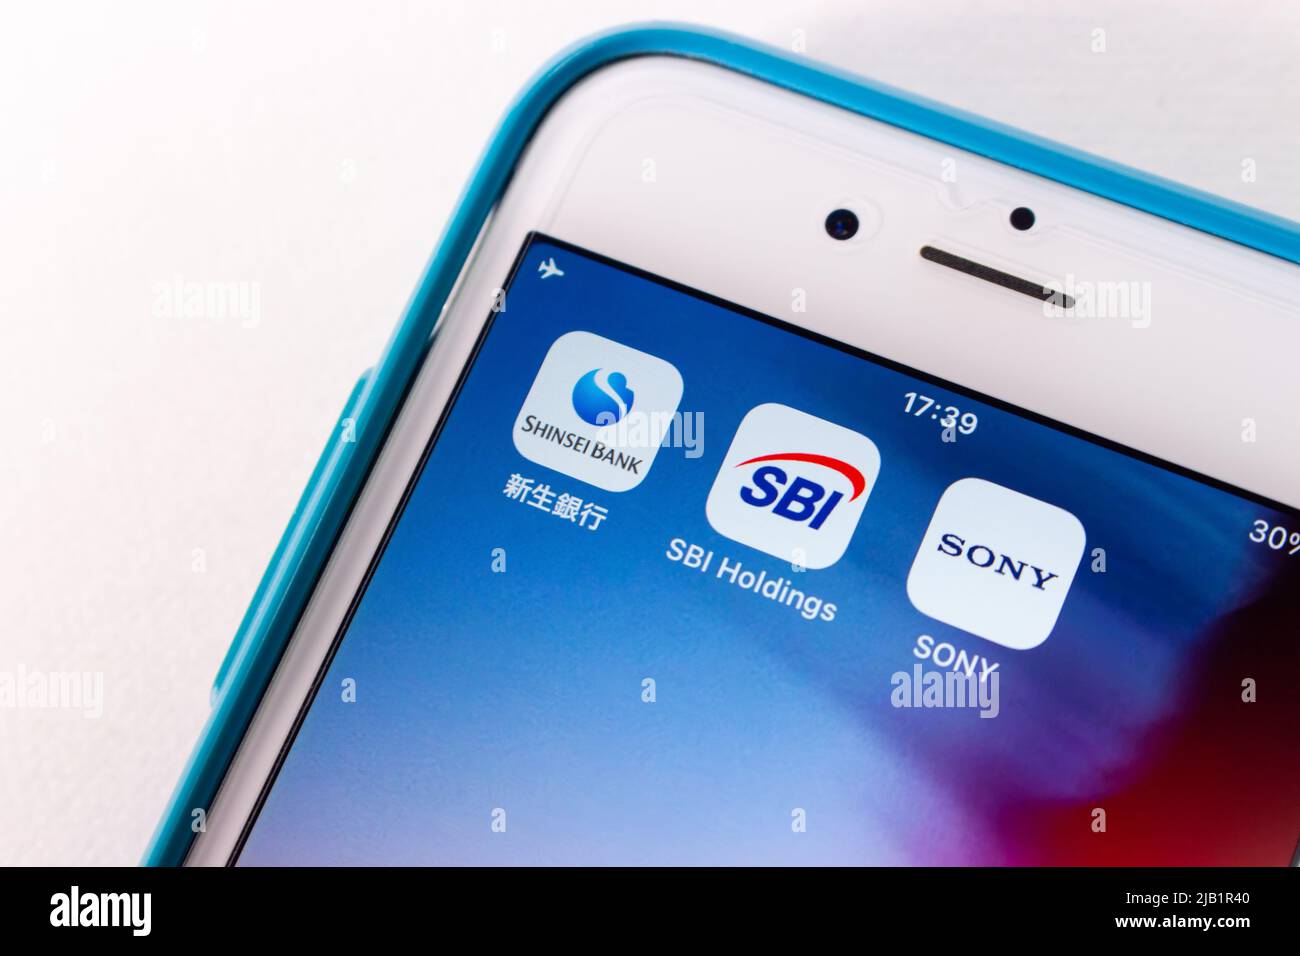 Kumamoto, JAPON - septembre 17 2021 : icônes de Shinsei Bank, SBI Holdings et SONY Group sur iPhone. Banque D'Images